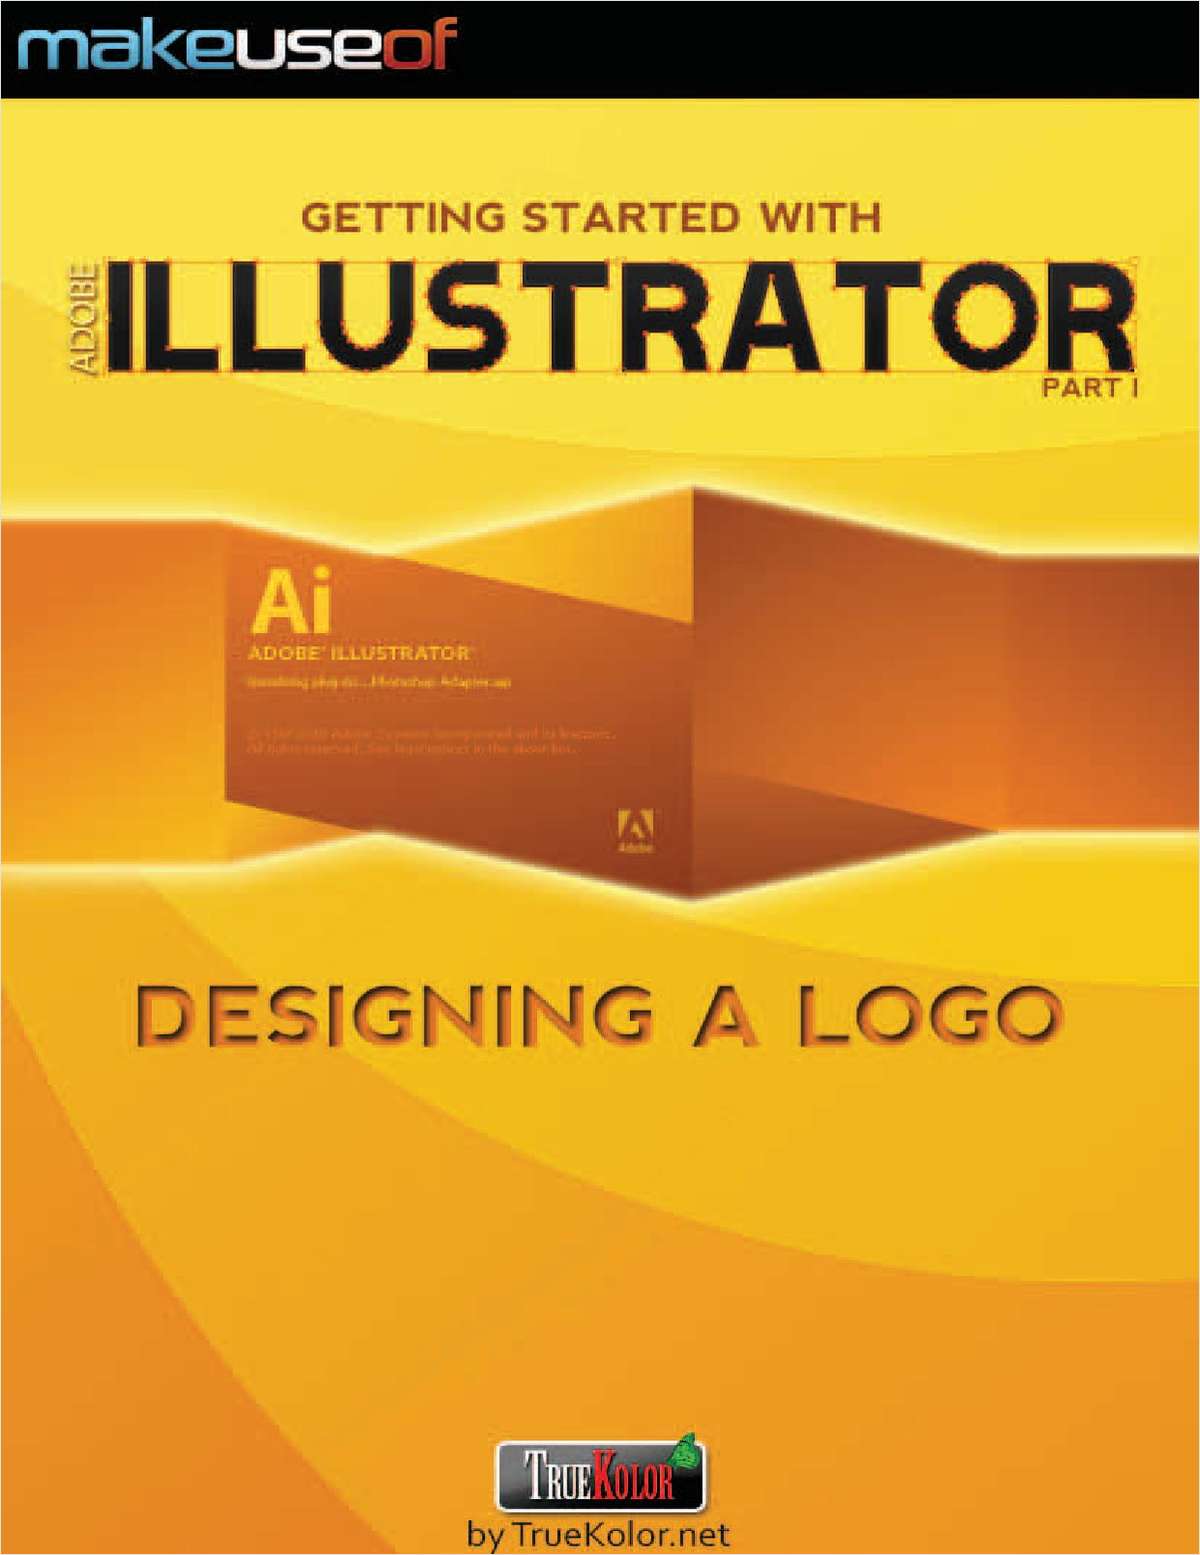 adobe illustrator manual free download